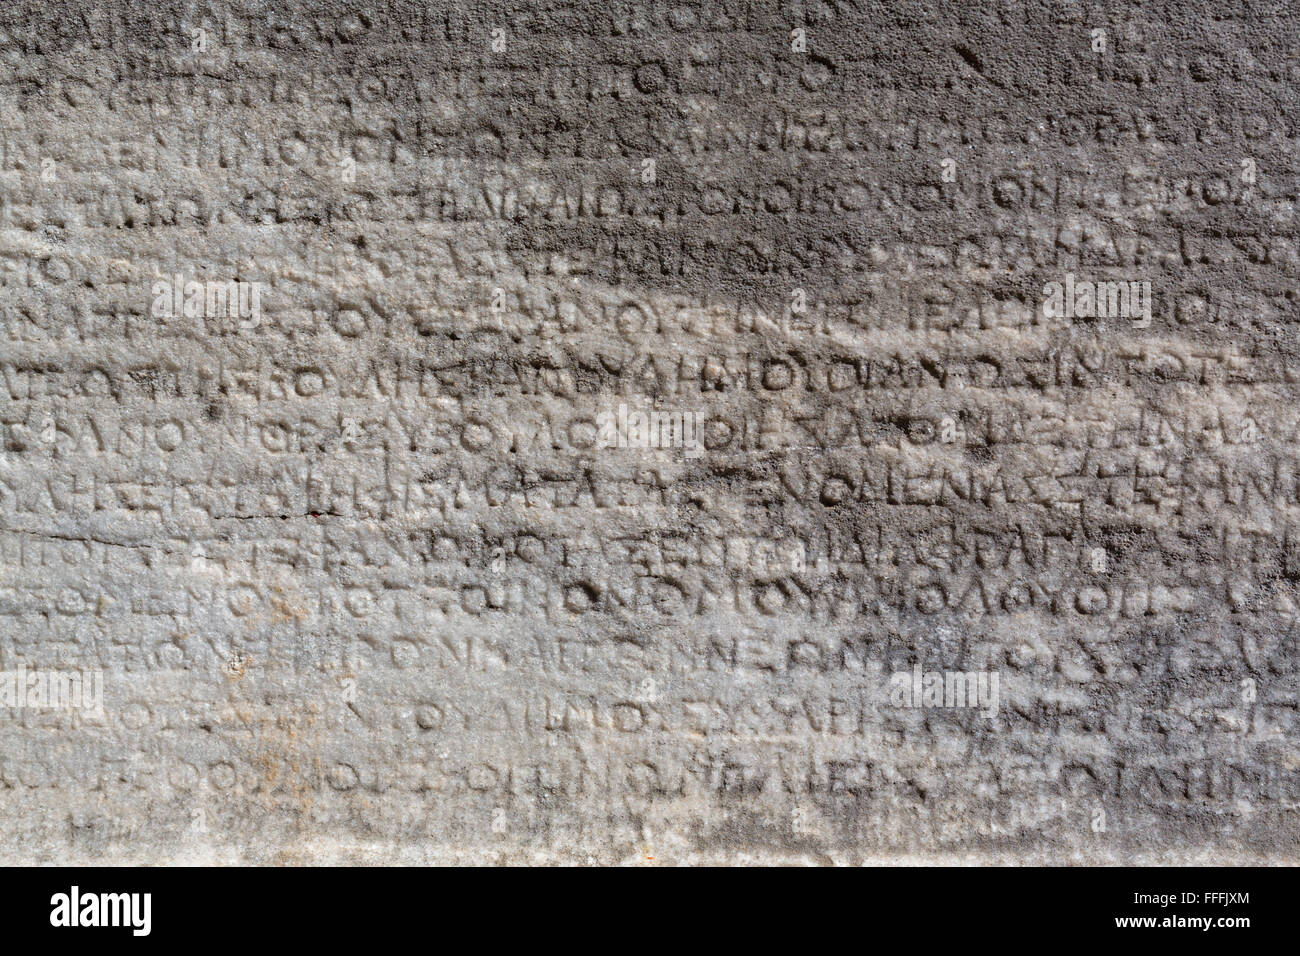 Inscription grecque sur la pierre, Ruines de l'antique Priène, Province d'Aydin, Turquie Banque D'Images